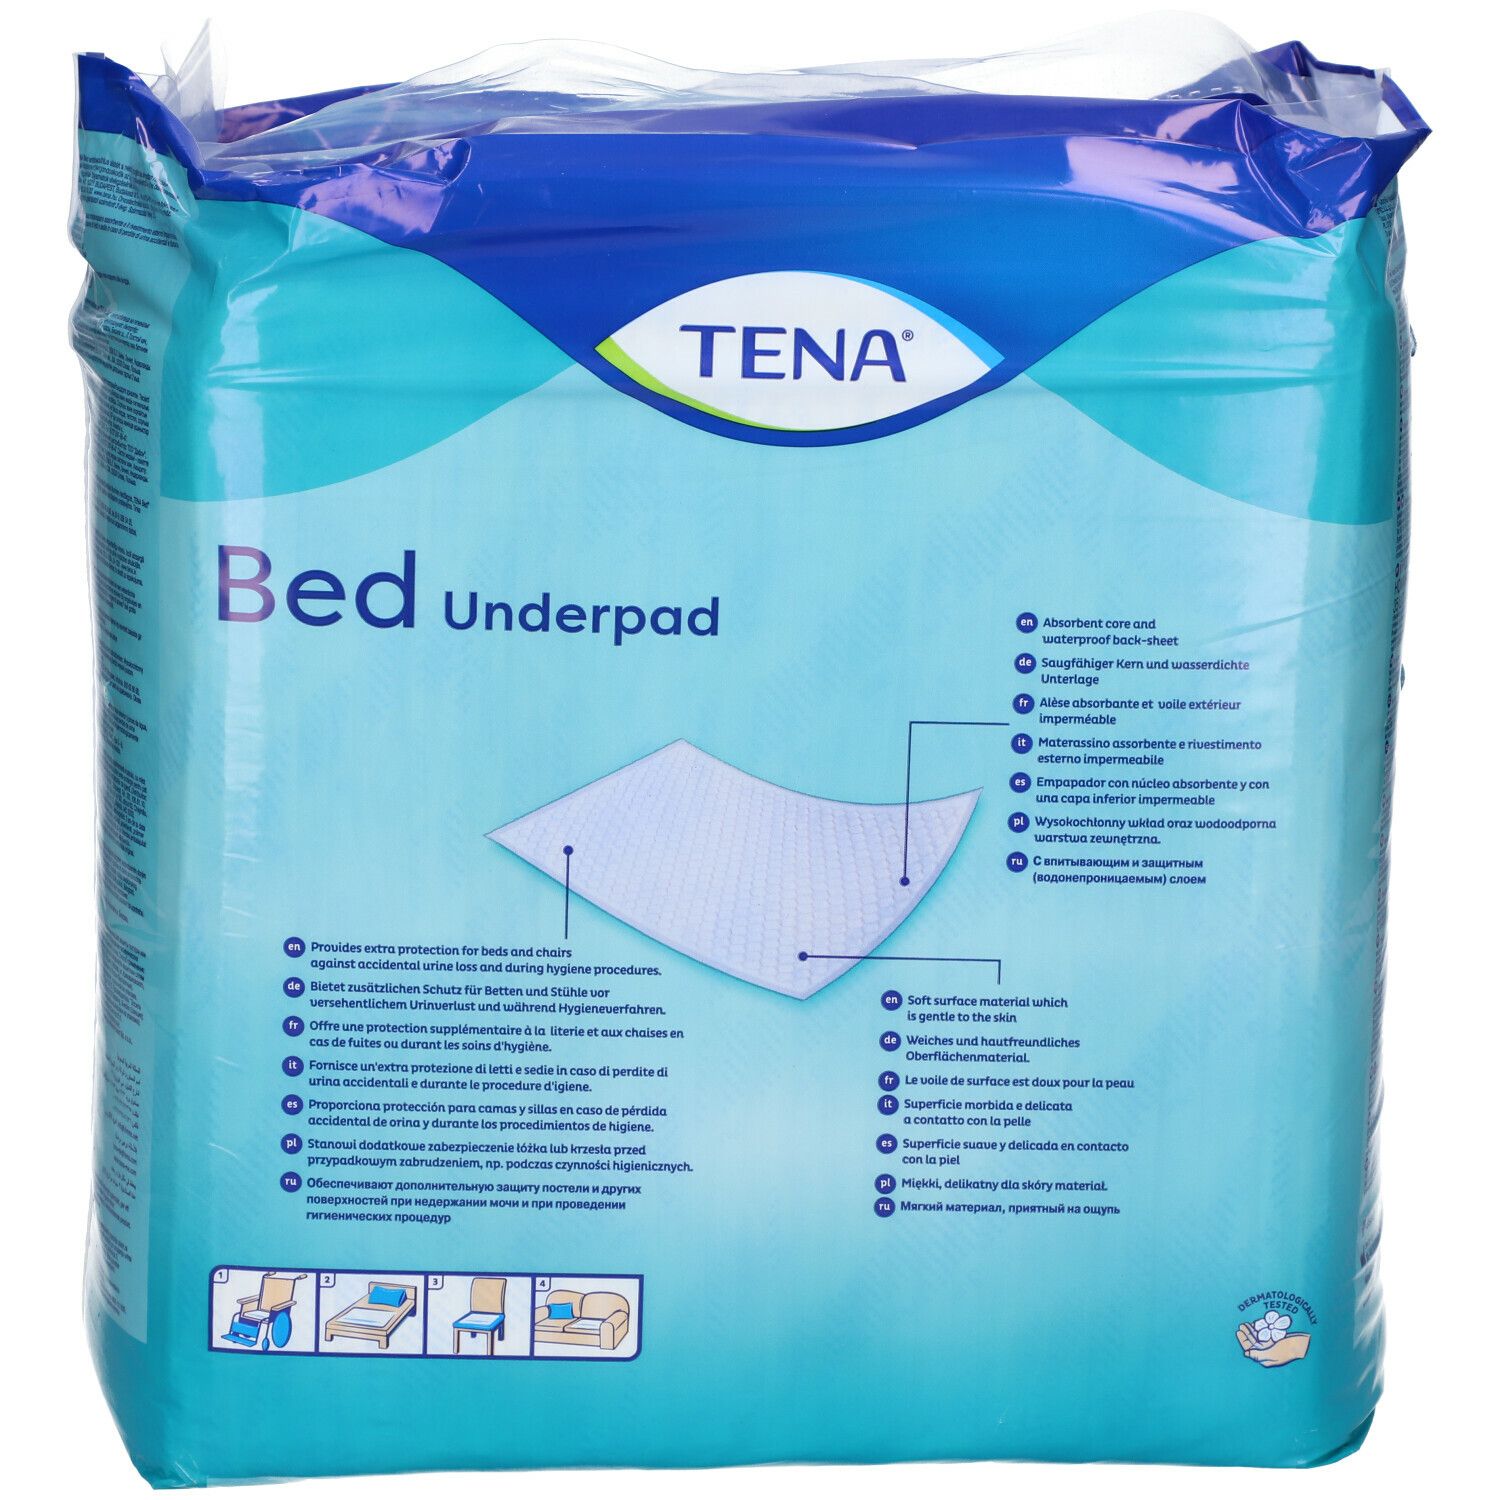 Tena® Bed Plus 60x90 cm